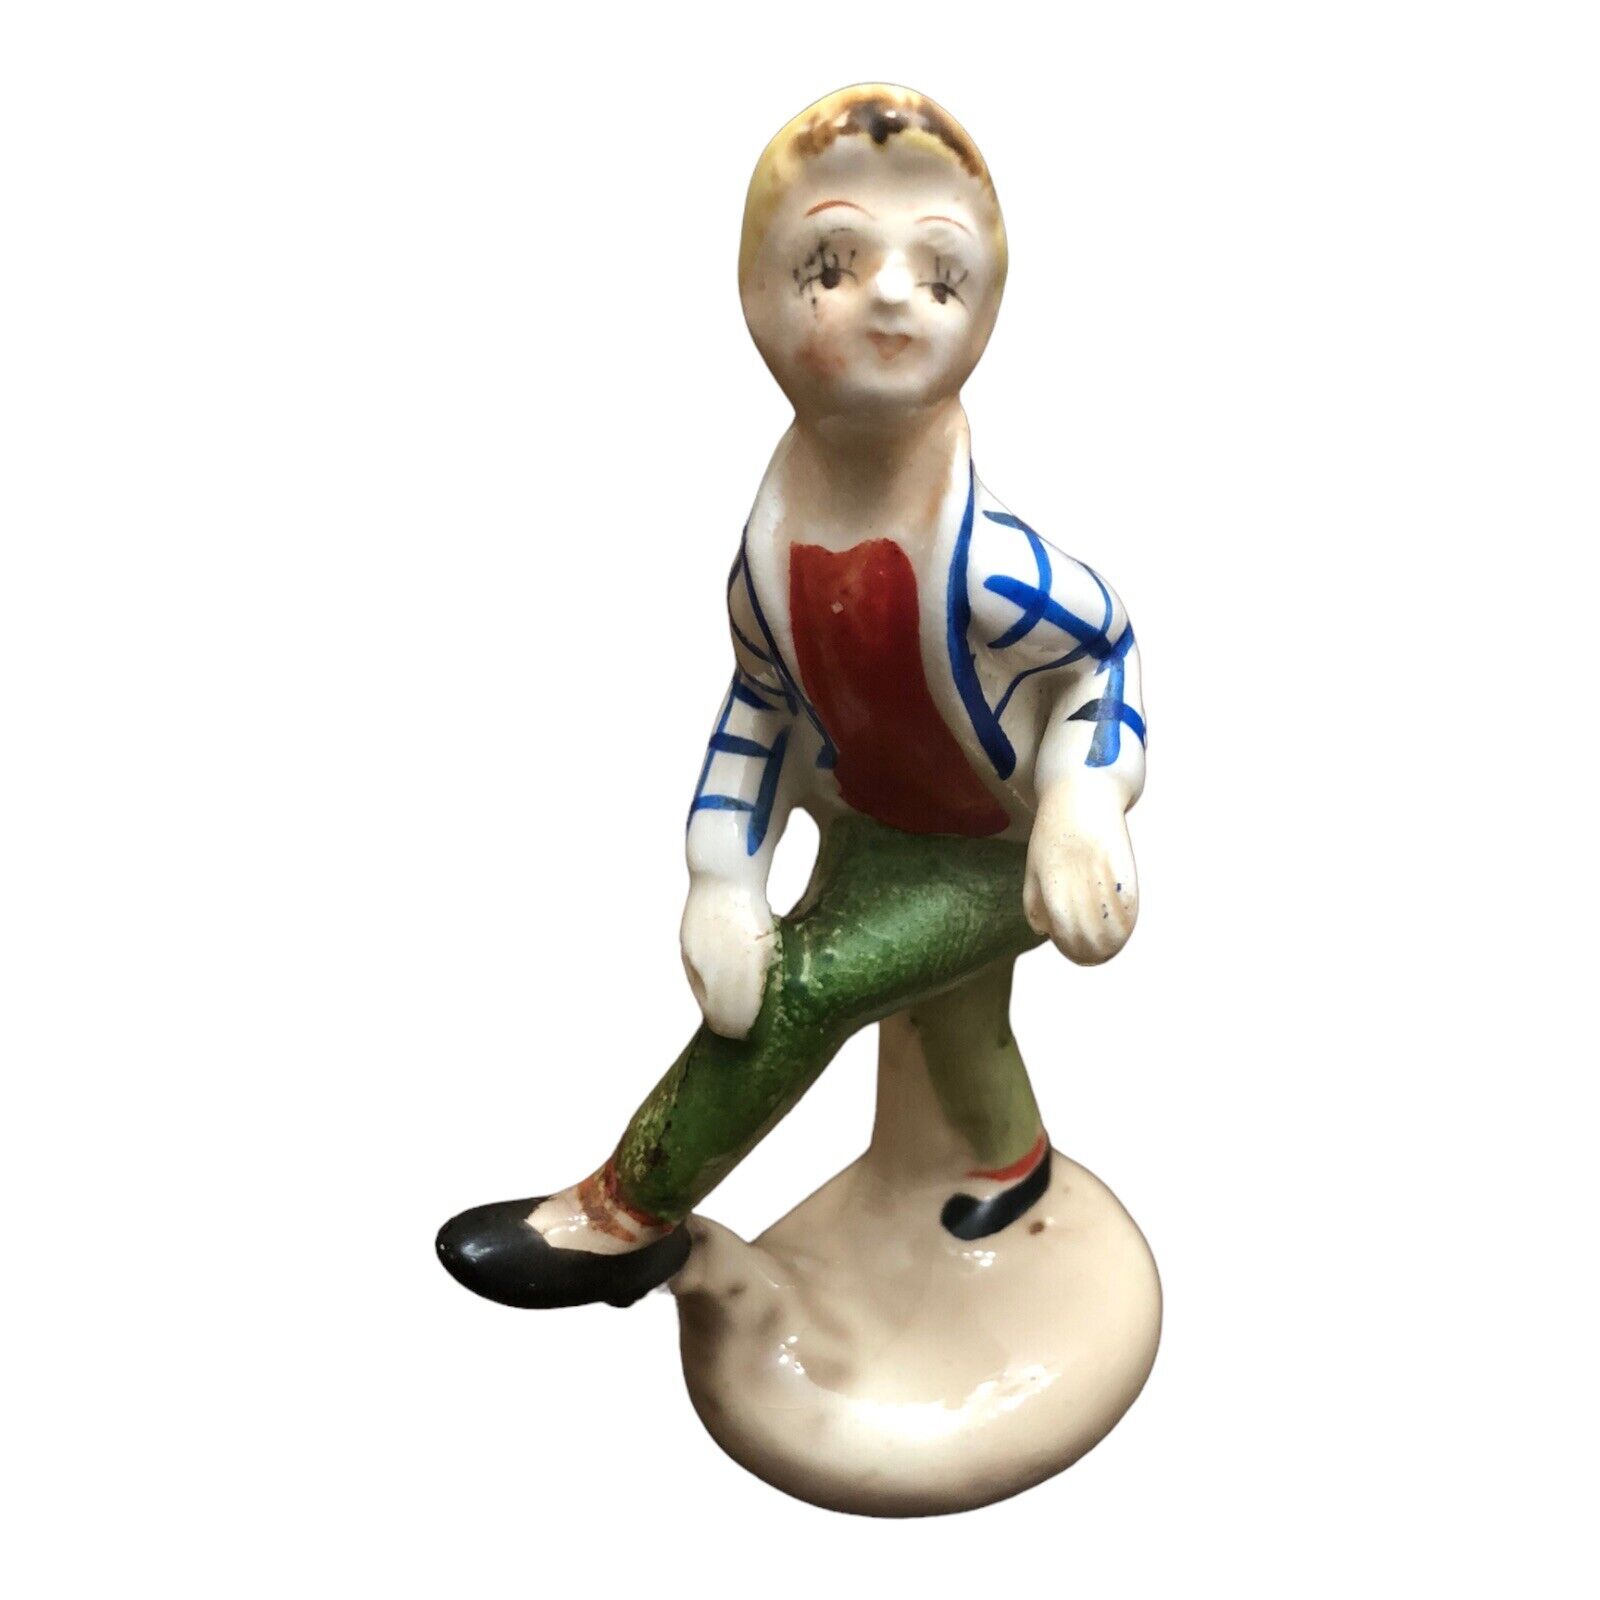 Vintage Japan Sock Hop Boy Figurine Porcelain 3.75” Tall